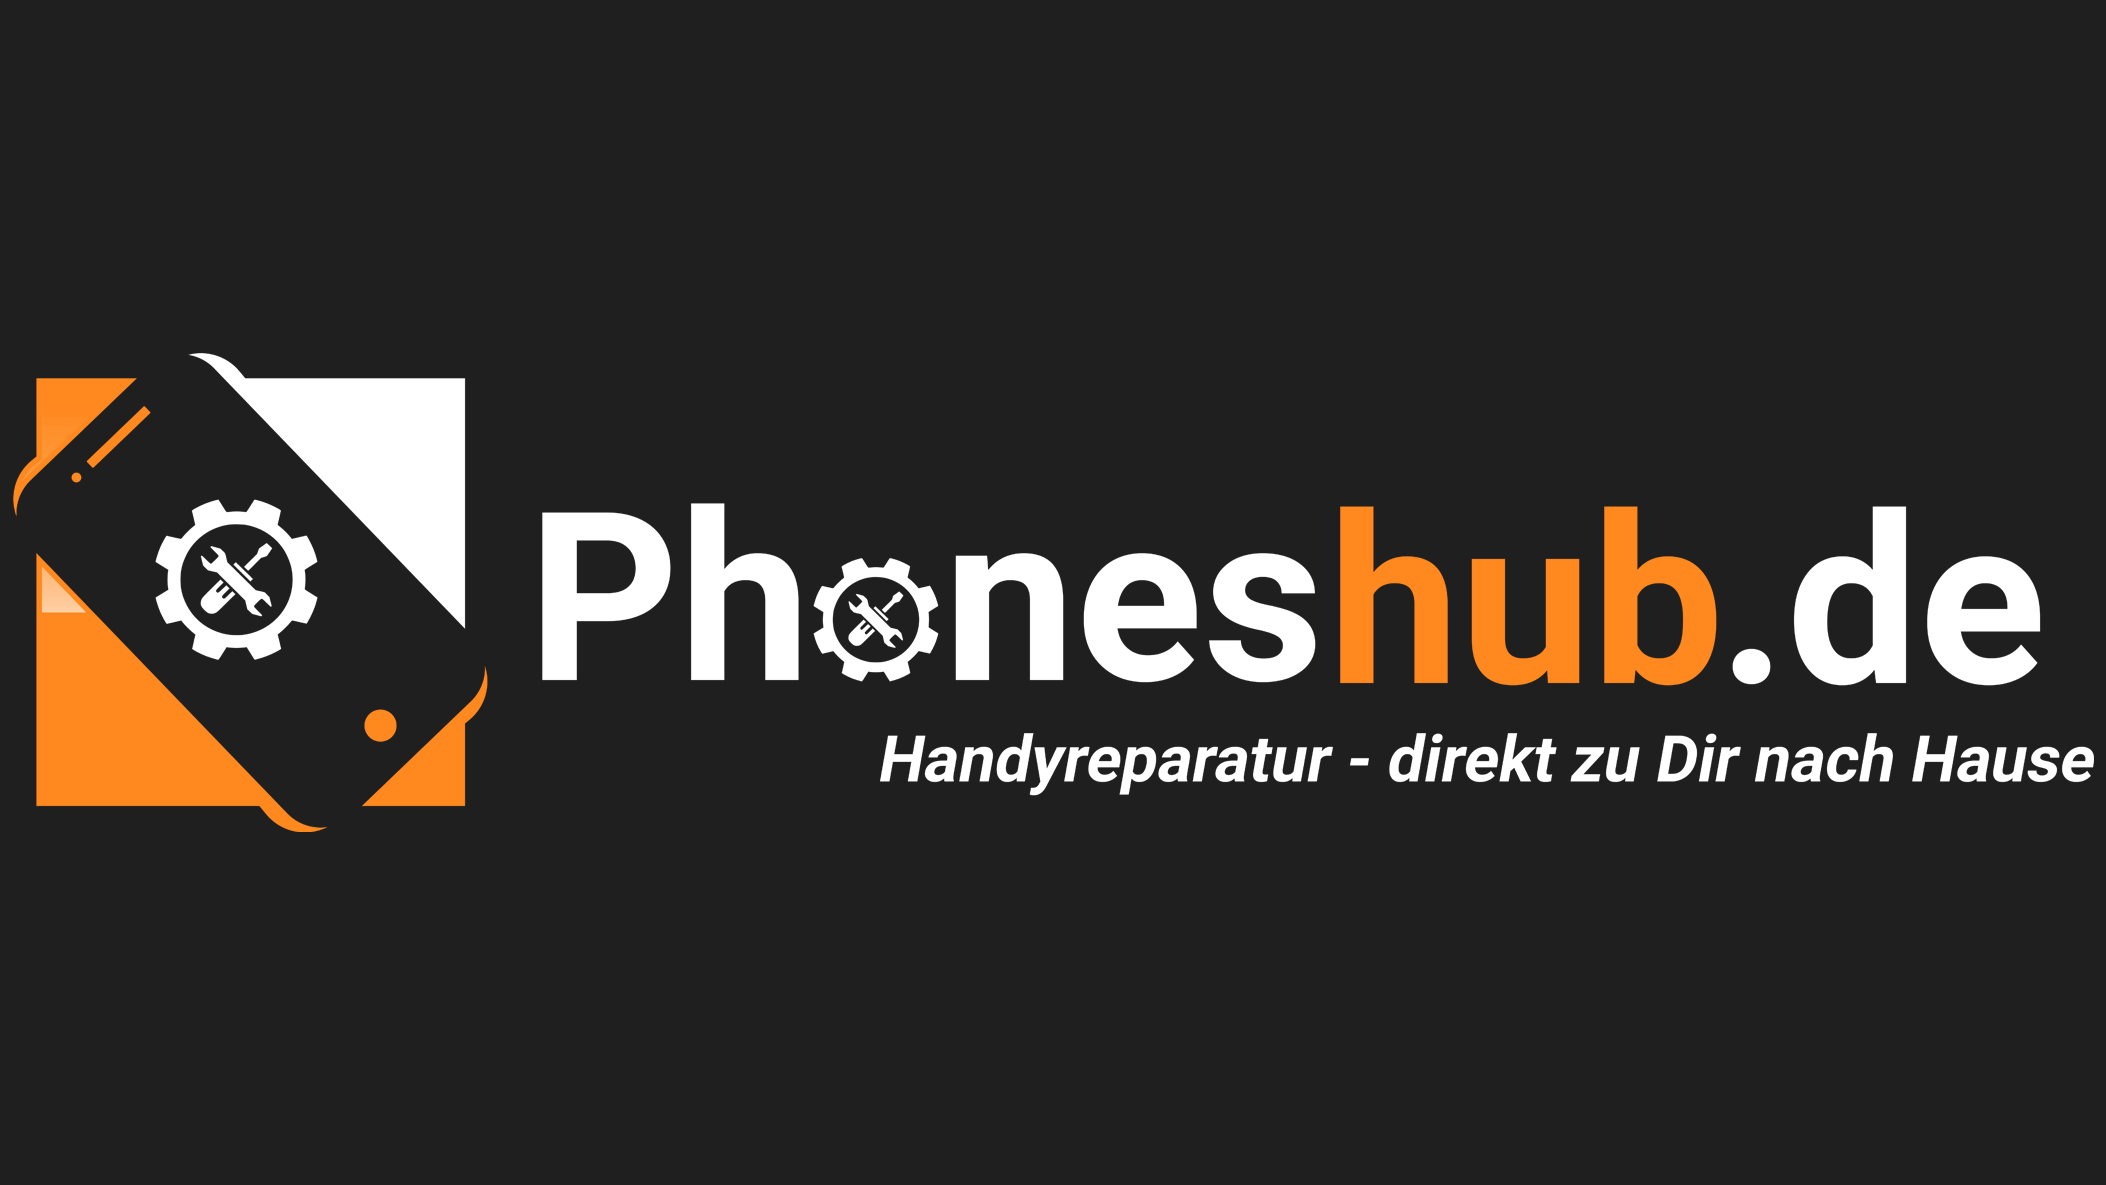 Bild der phoneshub - Handyreparatur direkt zu Dir nach Hause